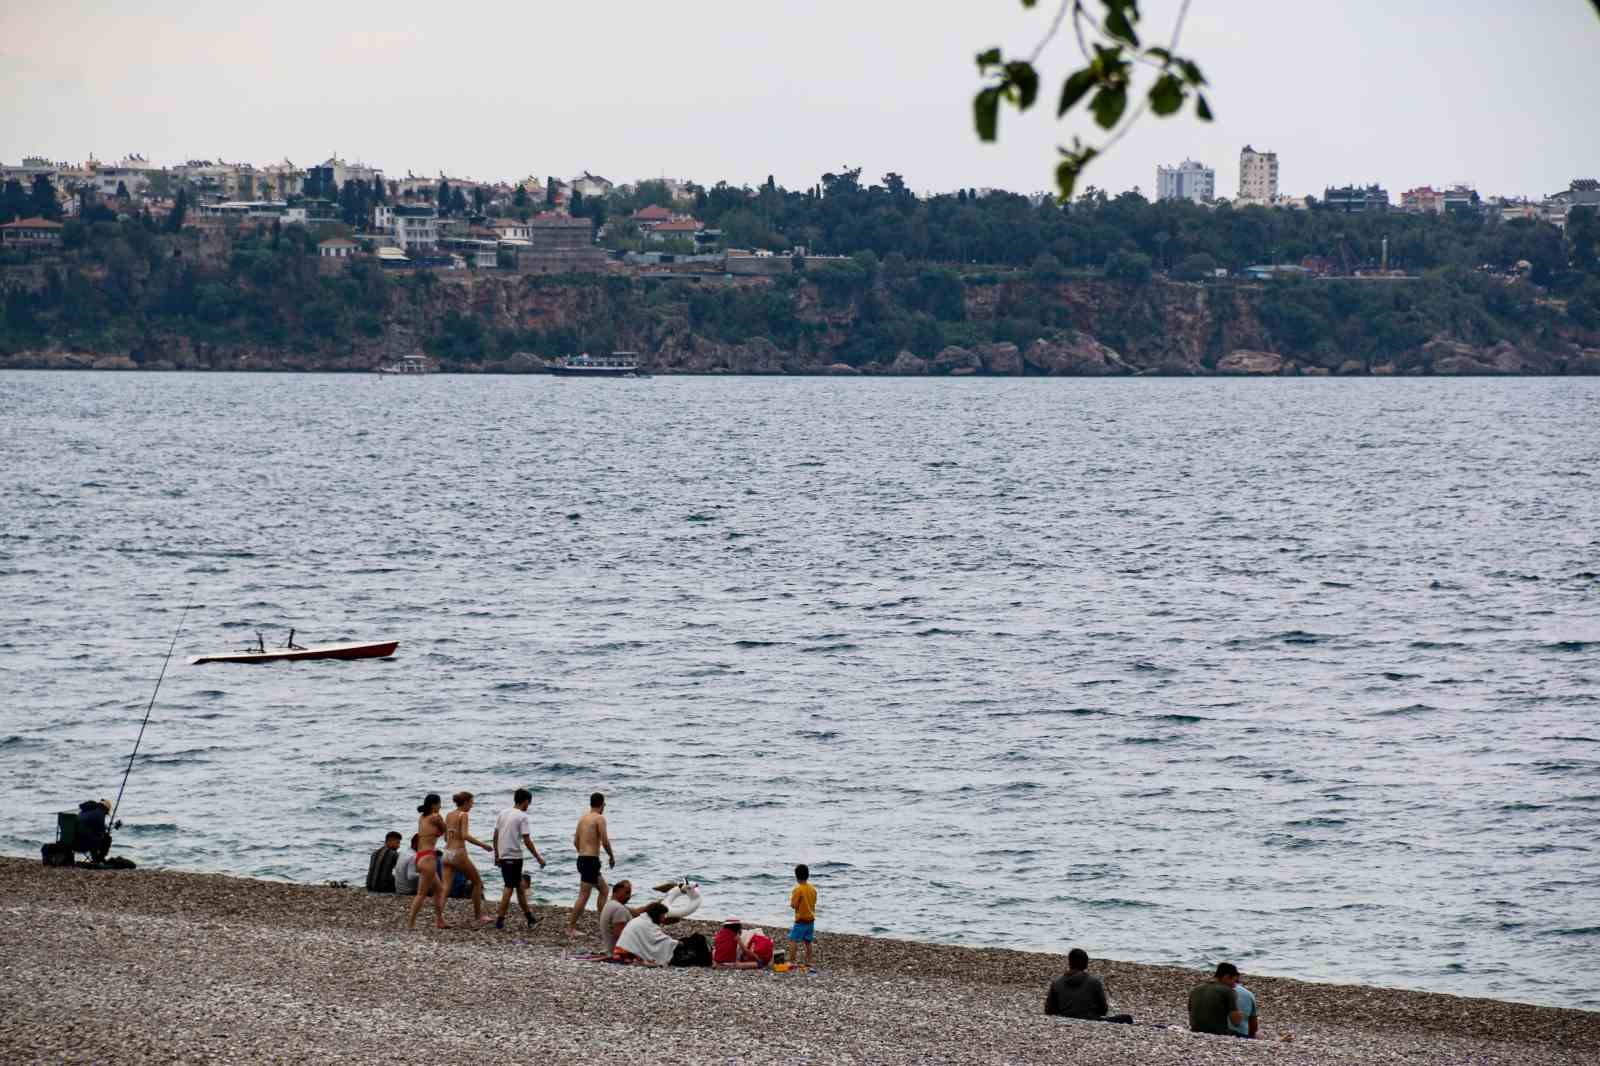 Antalya’da tatilcilere kapalı hava sürprizi, milyonları ağırlayan sahilde çok az sayıda kişi denize girdi
